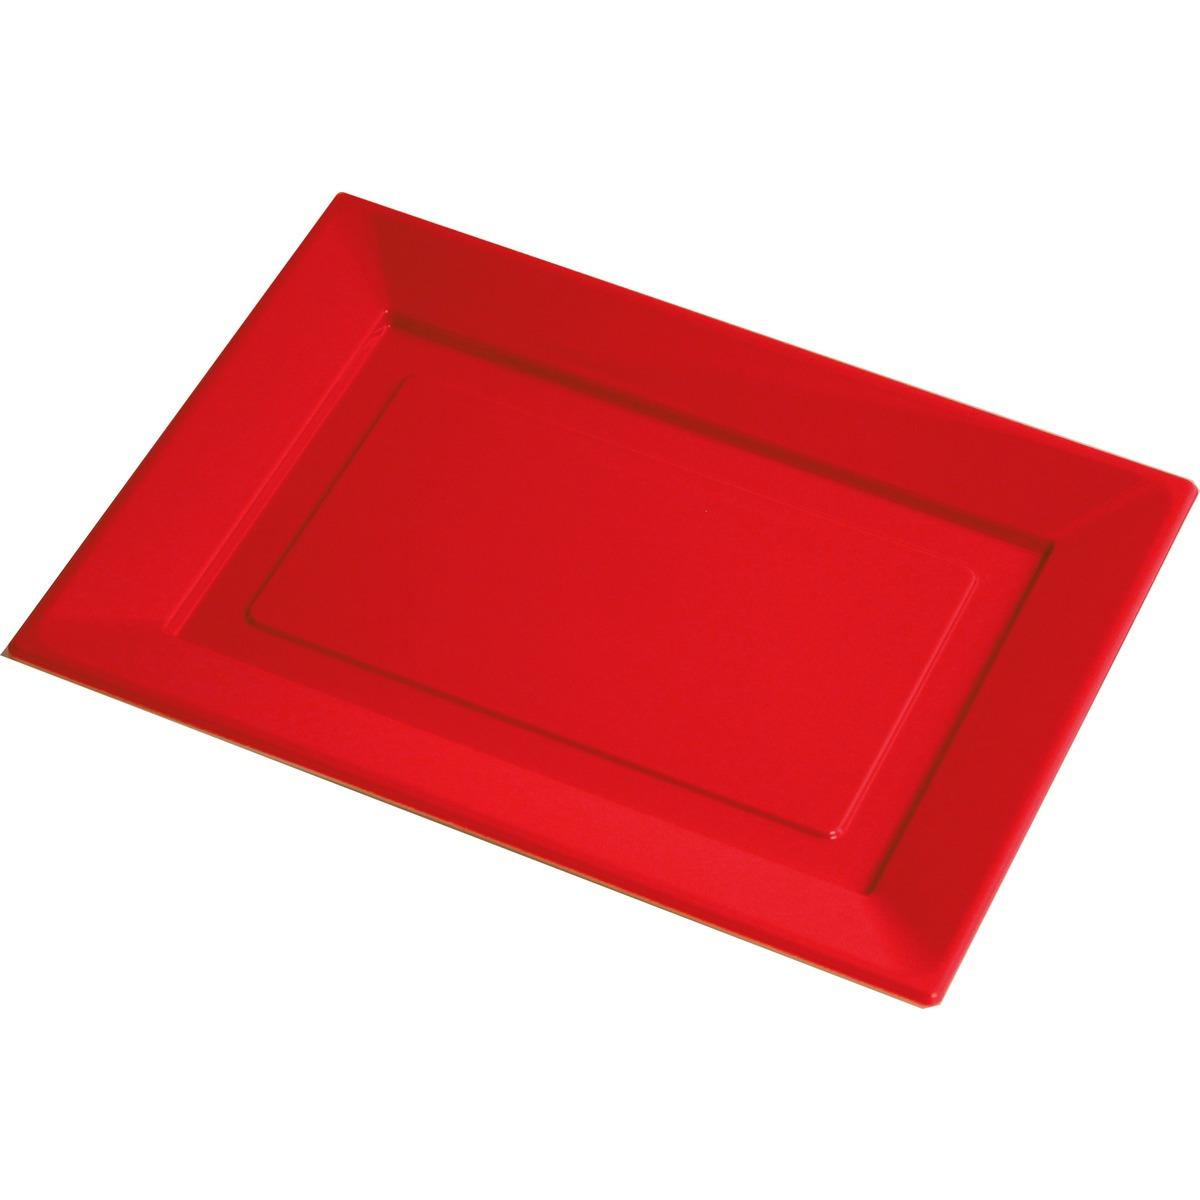 Lot de 4 plateaux en plastique - 16,5 x 31,5 cm - Rouge